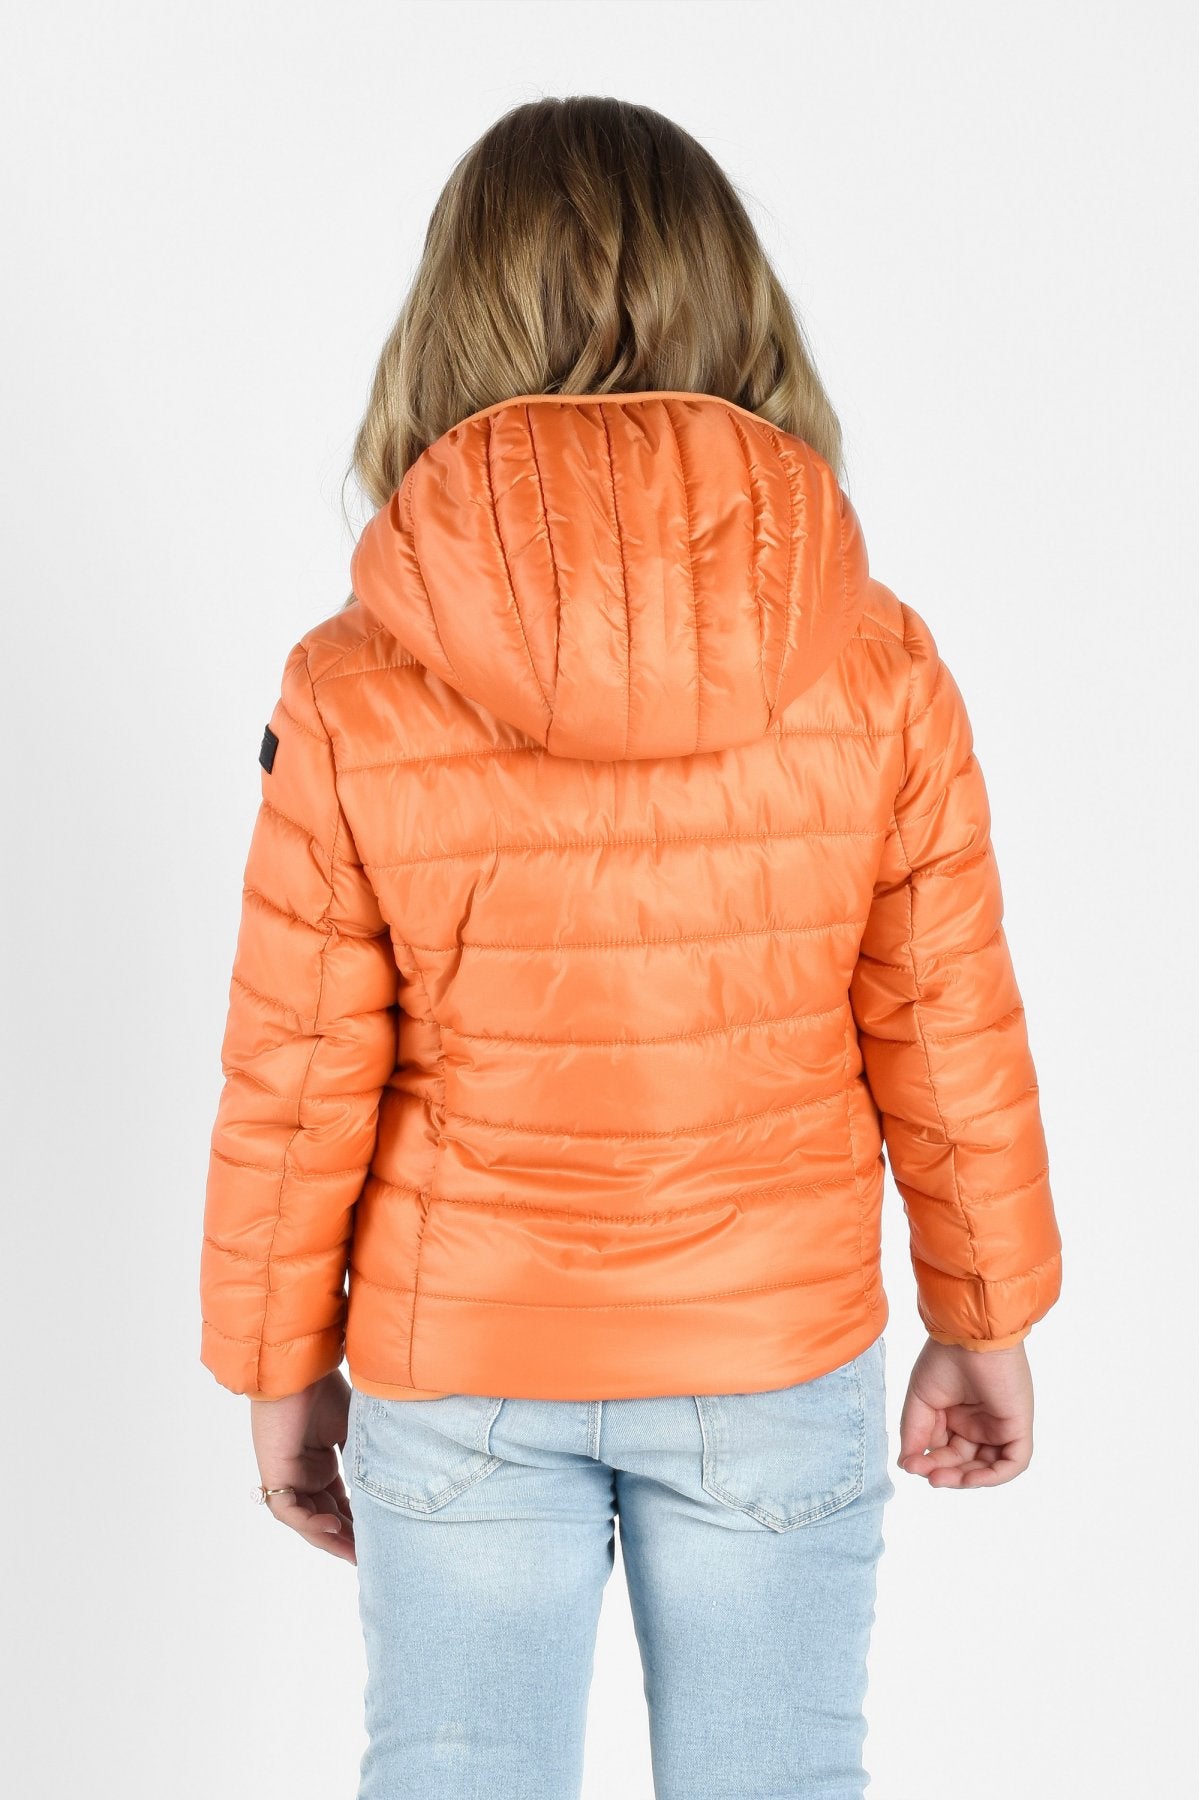 CANADIAN Kids's Jacket Tylers Bay Sherpa-G222220KRE orange